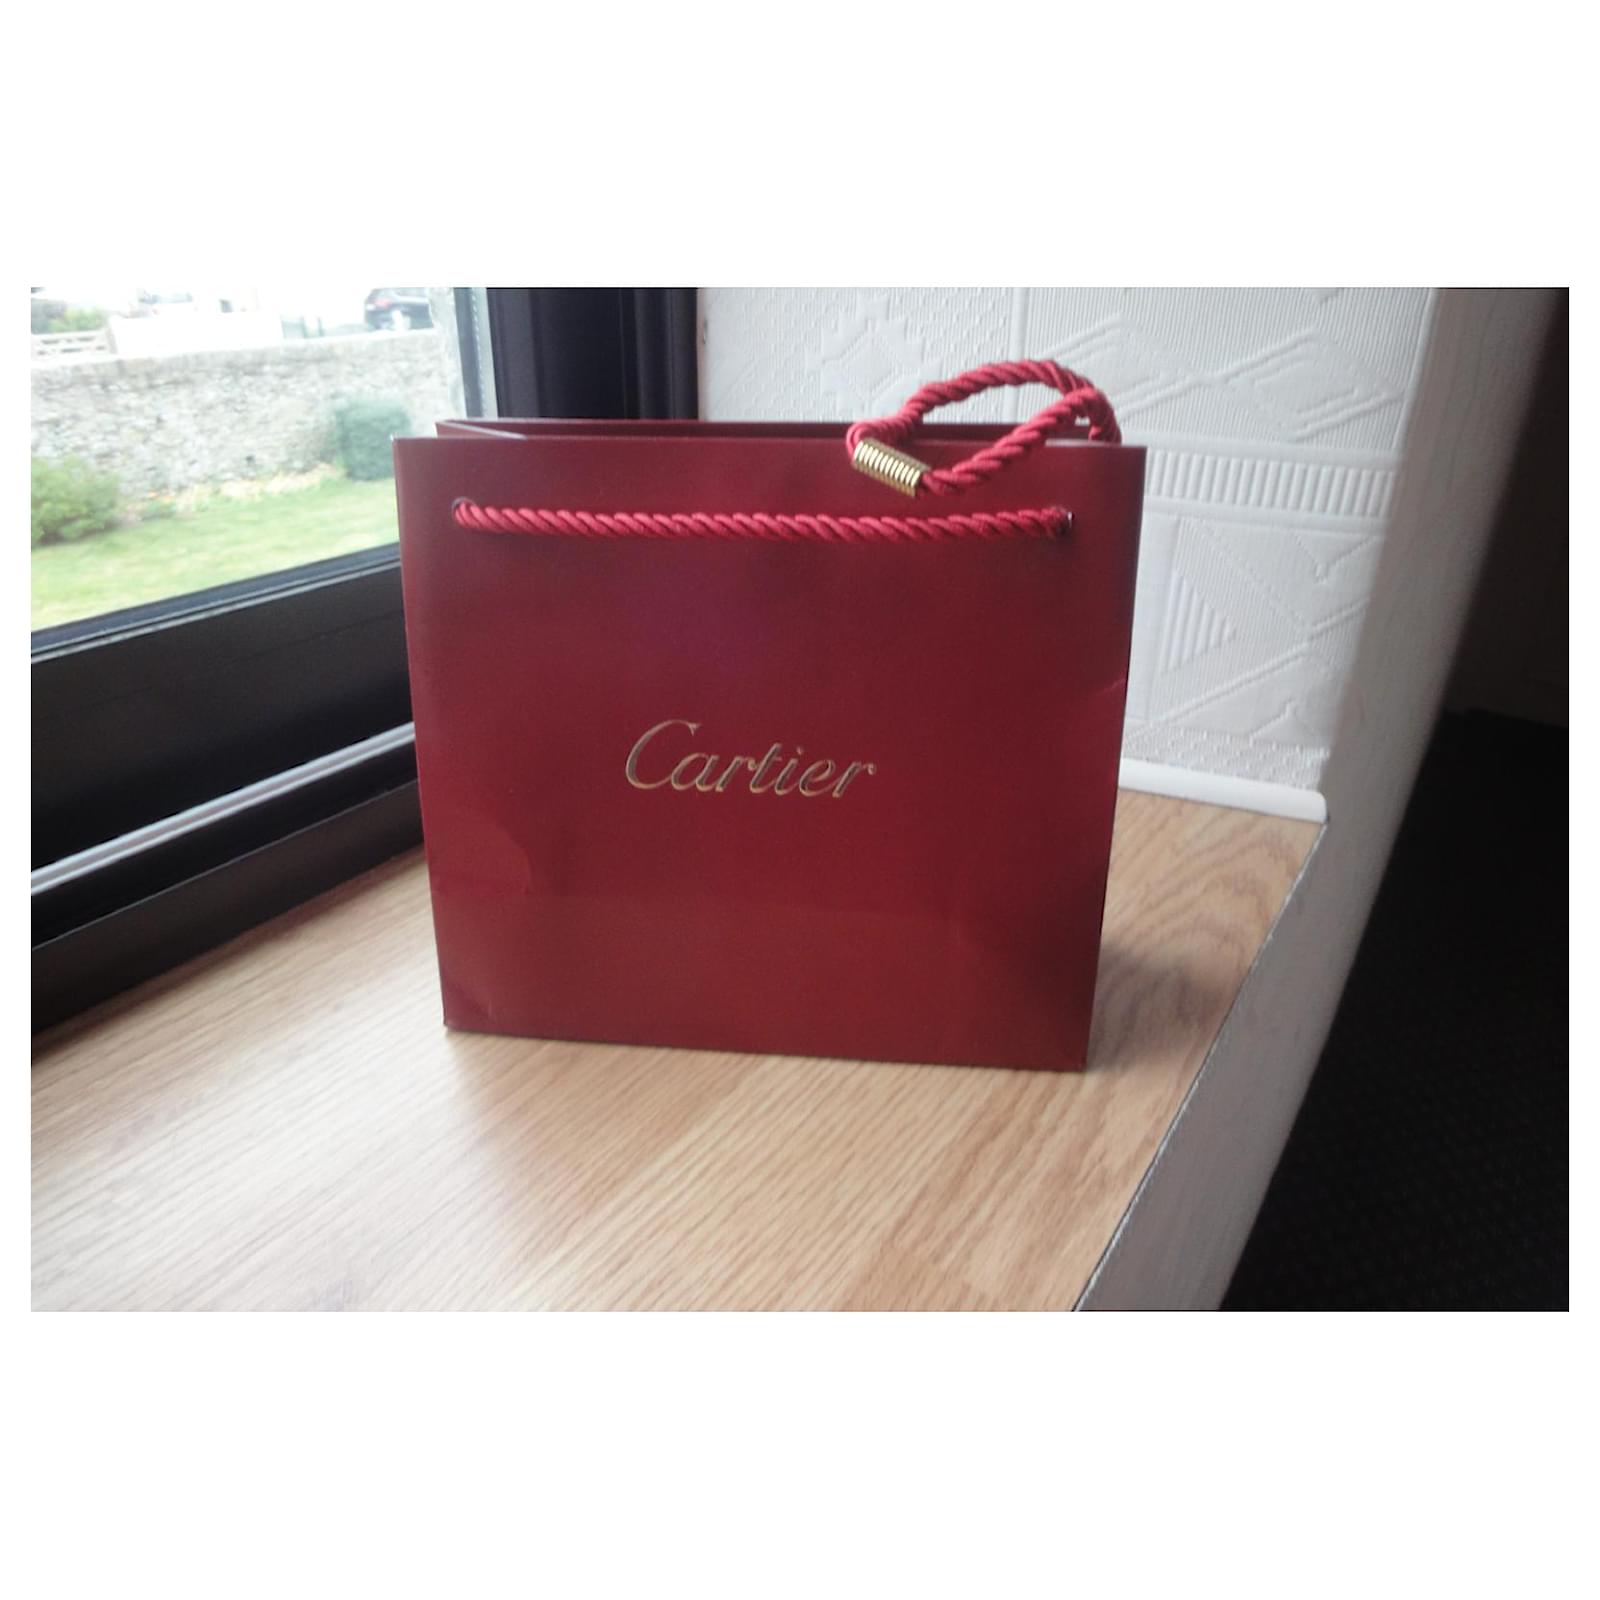 real cartier shopping bag